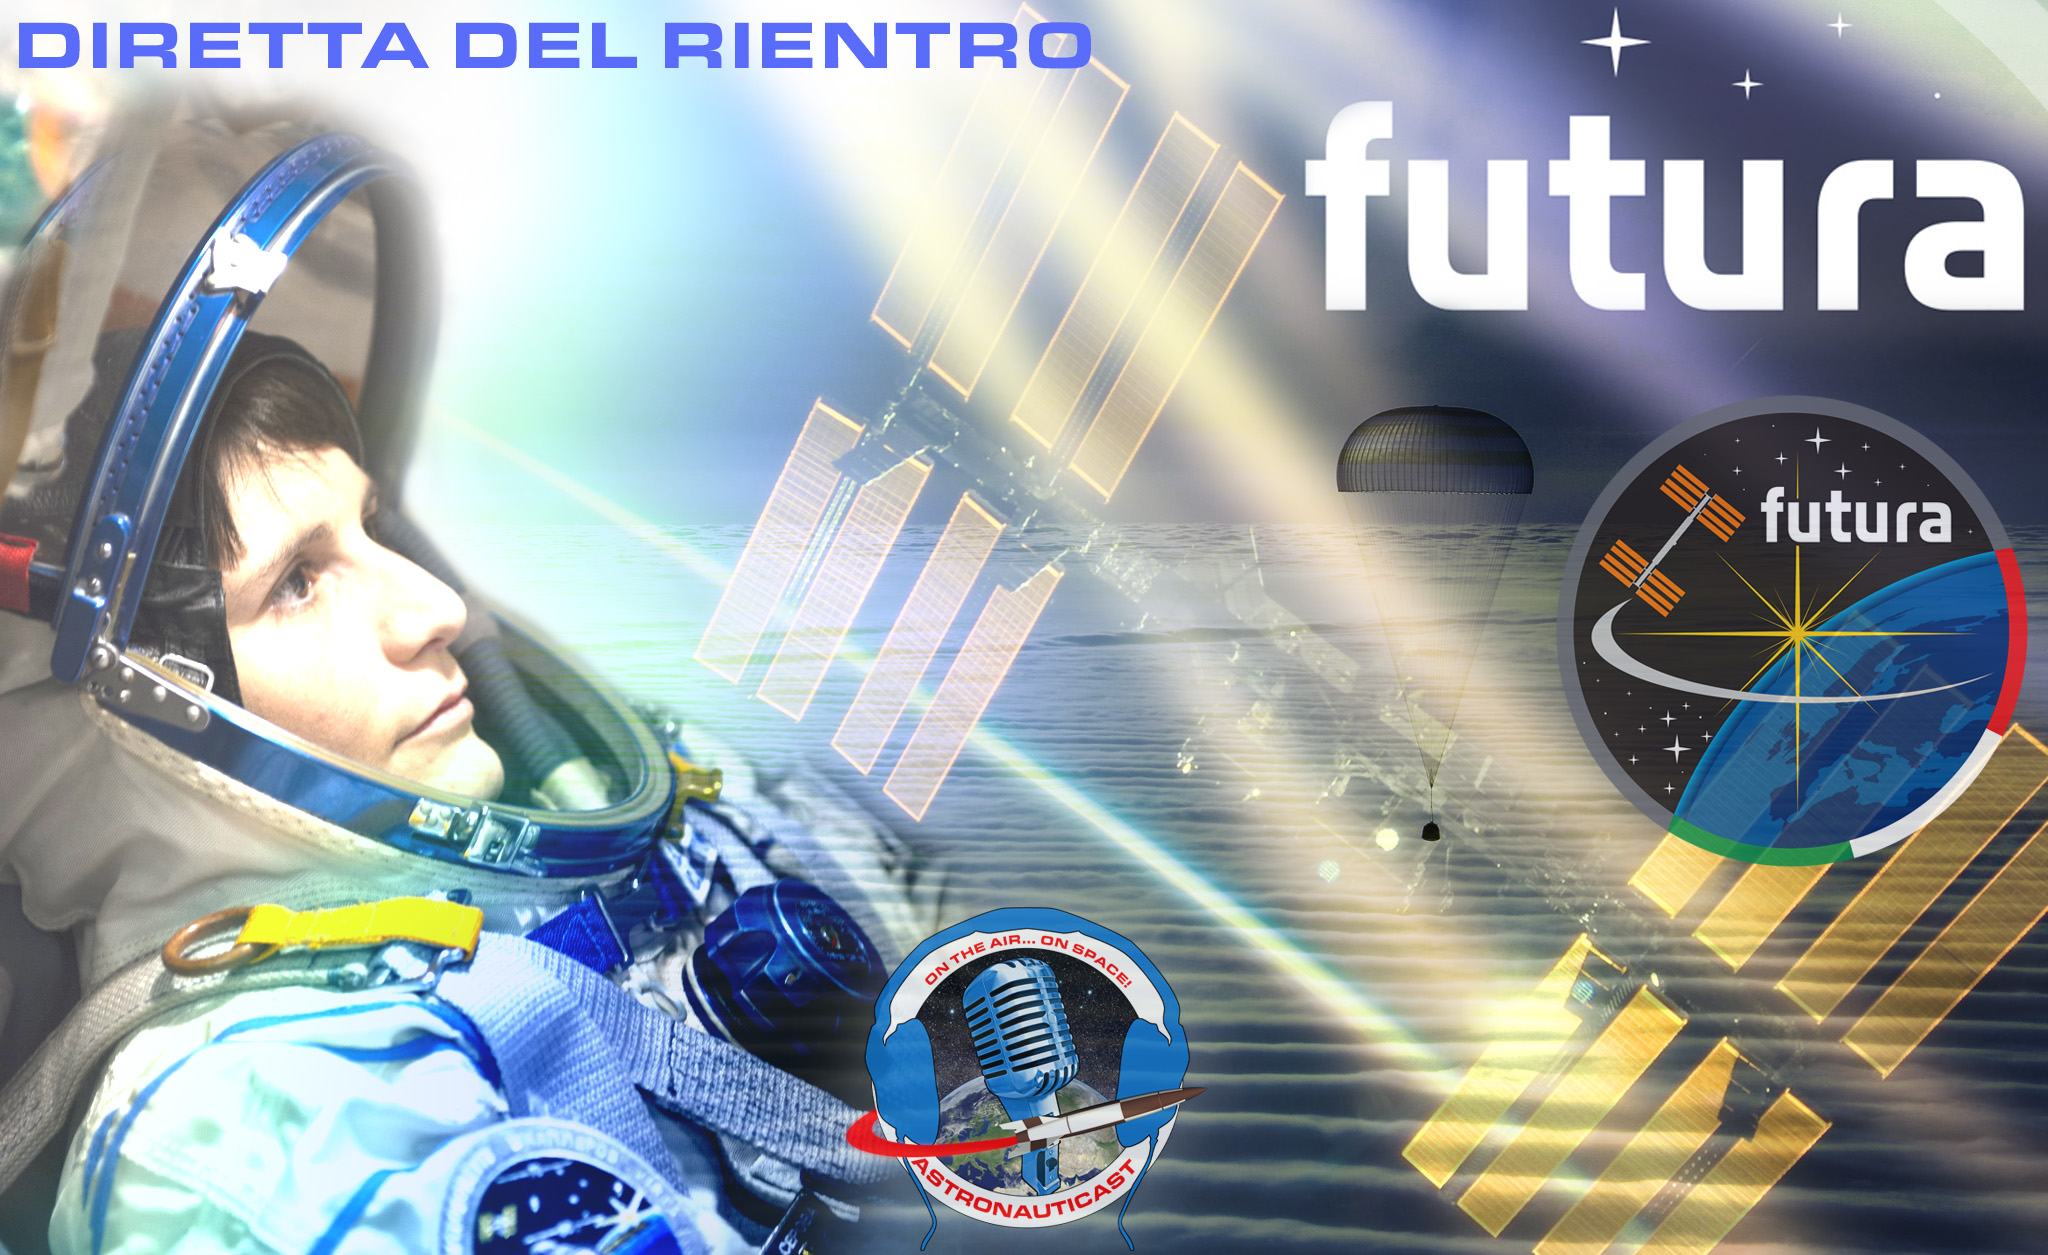 Copertina della diretta del ritorno sulla Terra di Futura. Credit: Riccardo Rossi